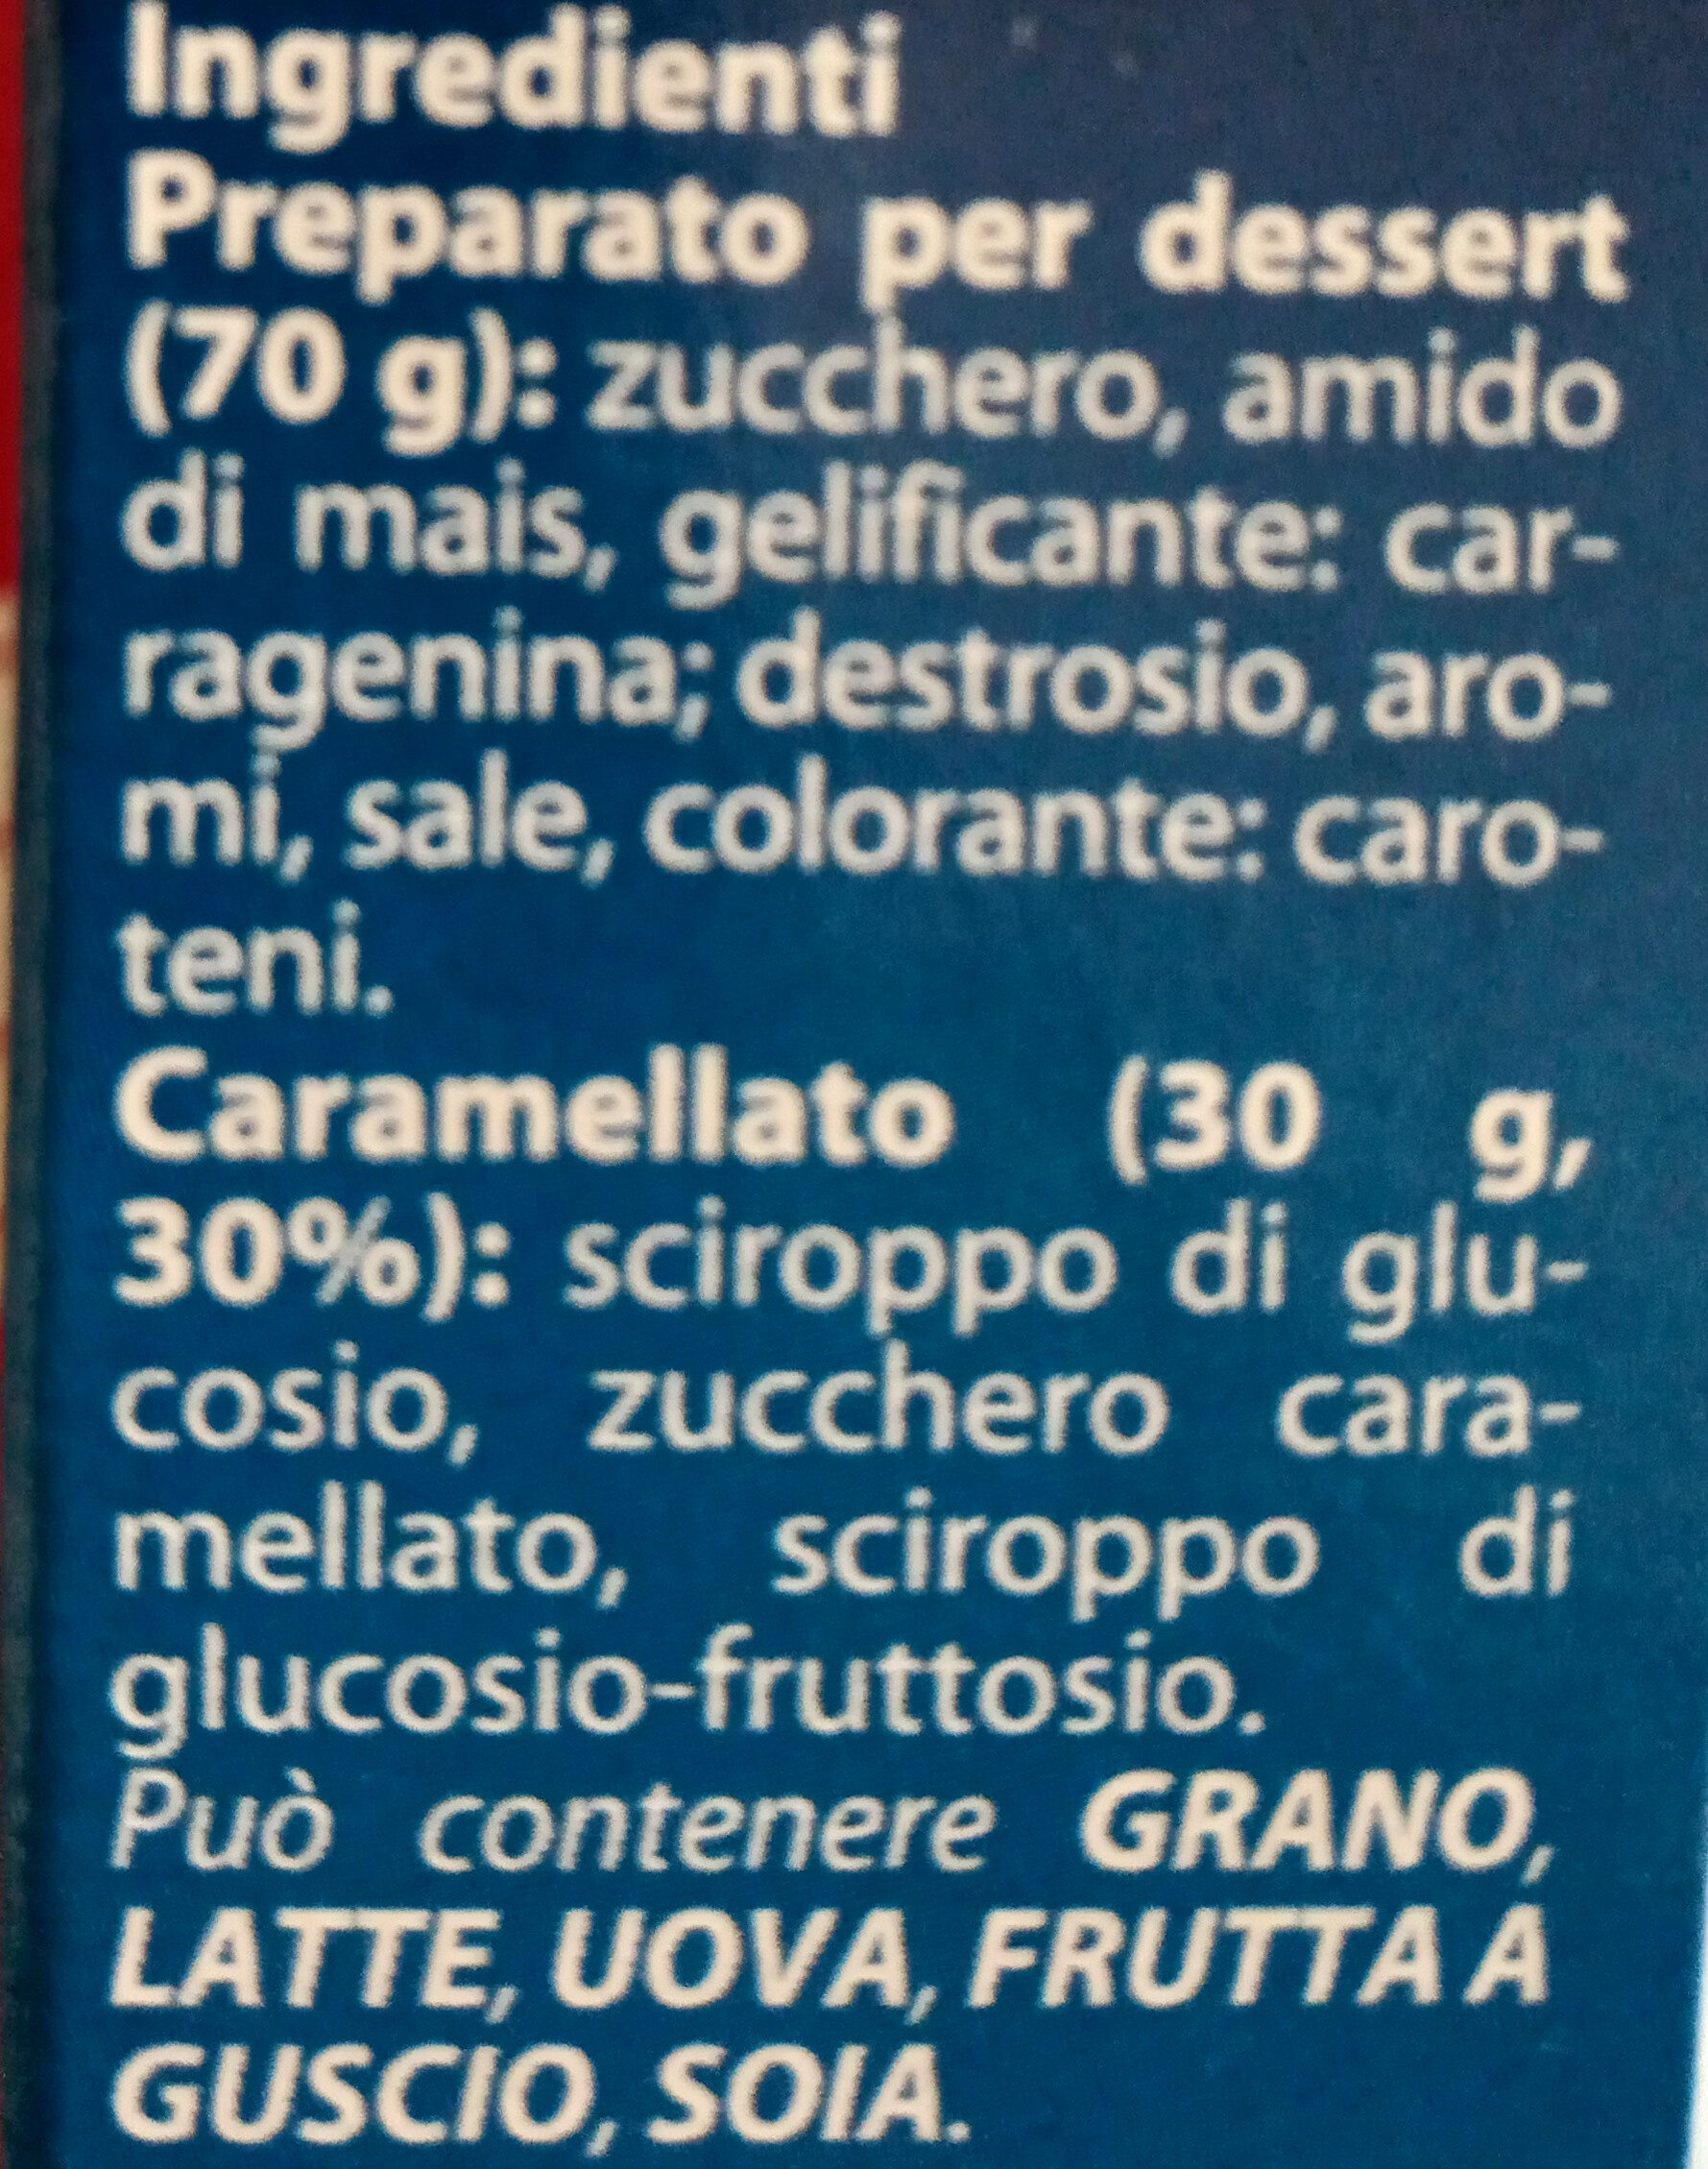 Crème Caramel con caramellato - Ingredients - it